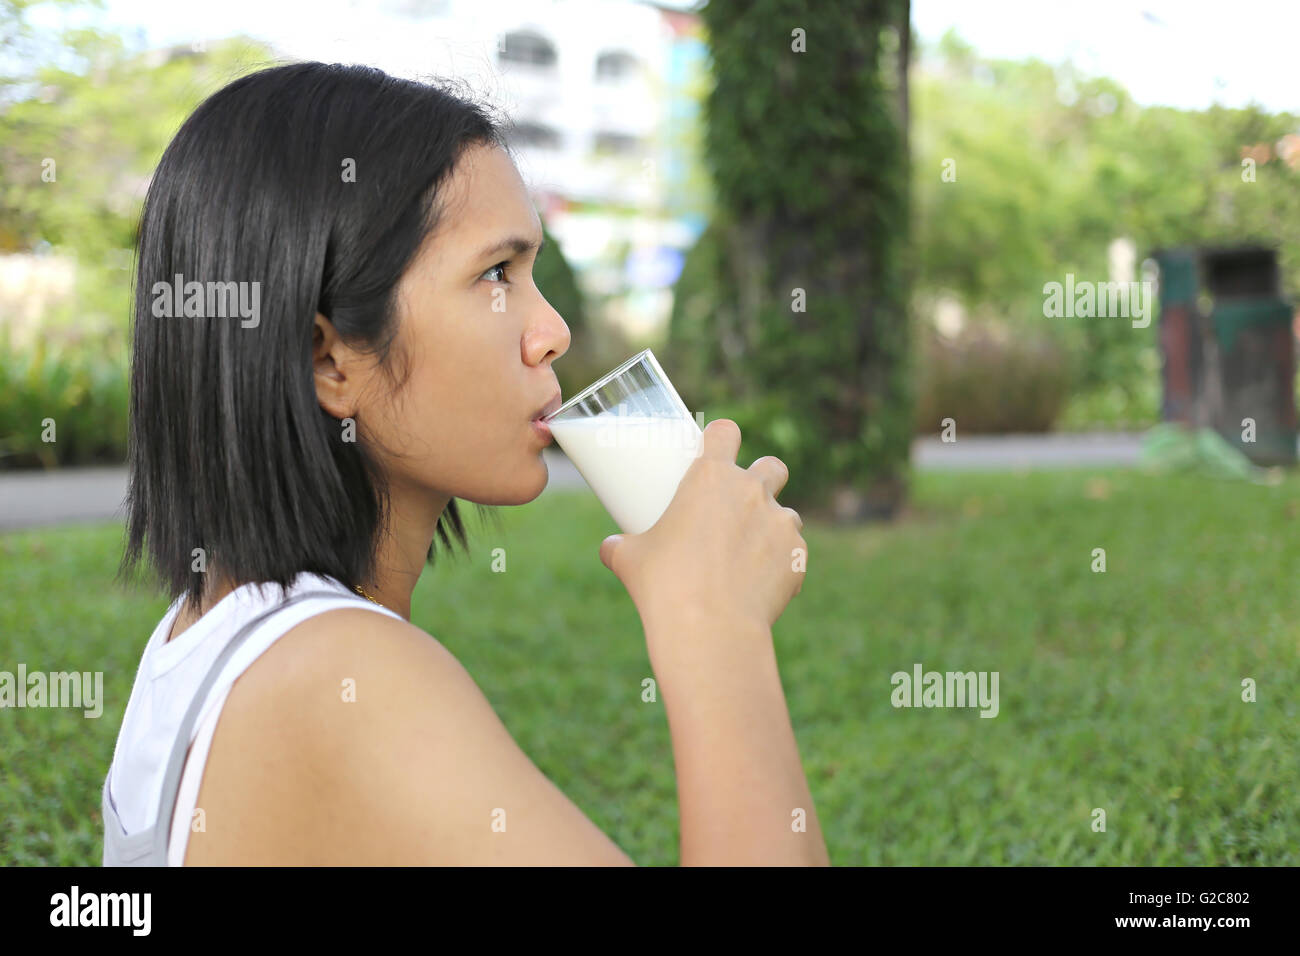 Maman était enceinte Asie boire du lait dans le jardin pour une bonne santé. Banque D'Images